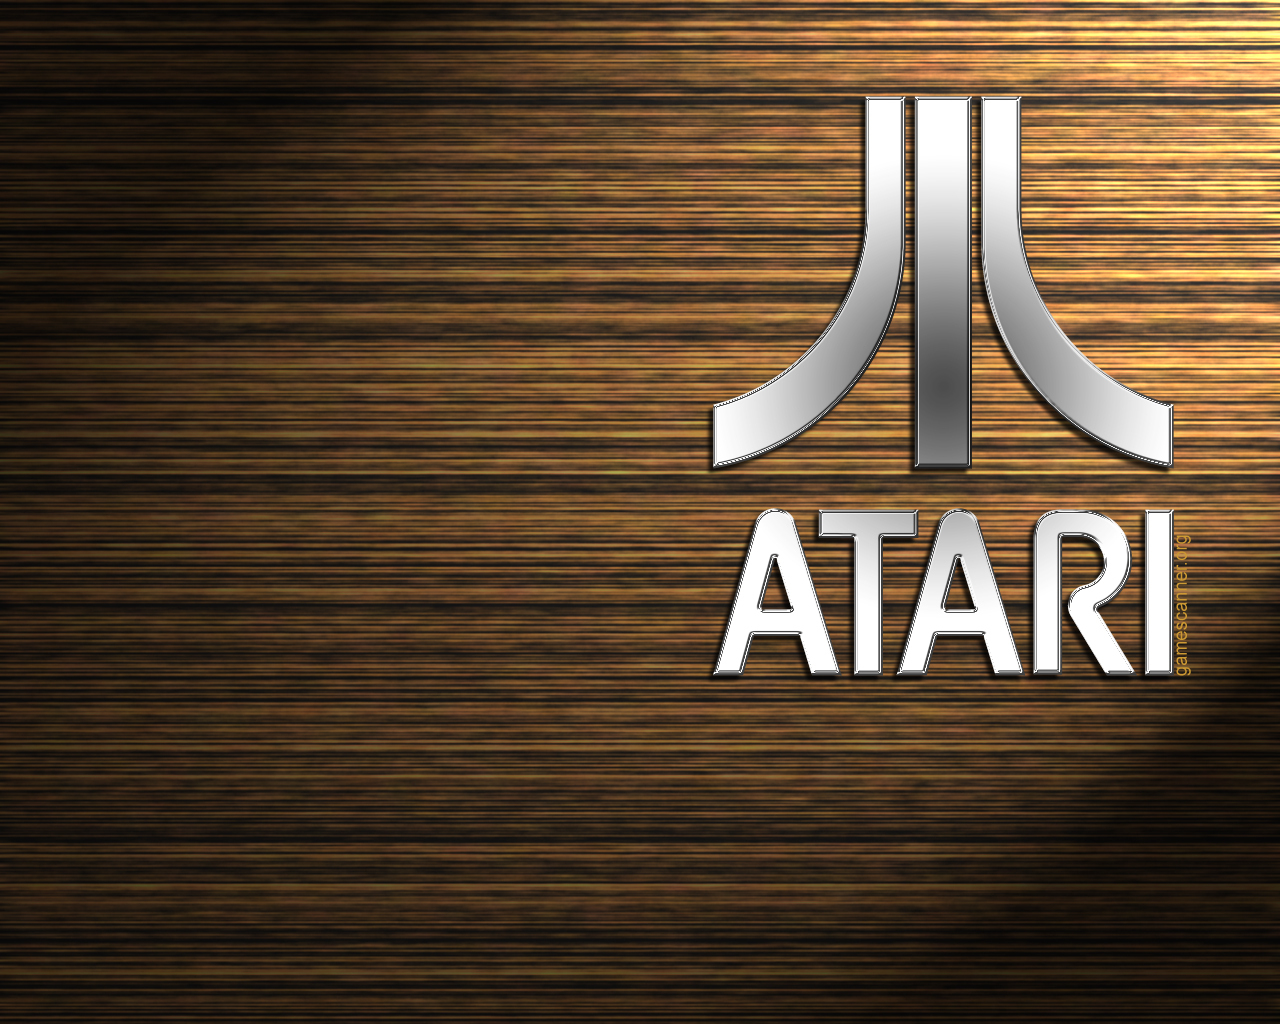 Video Games Atari